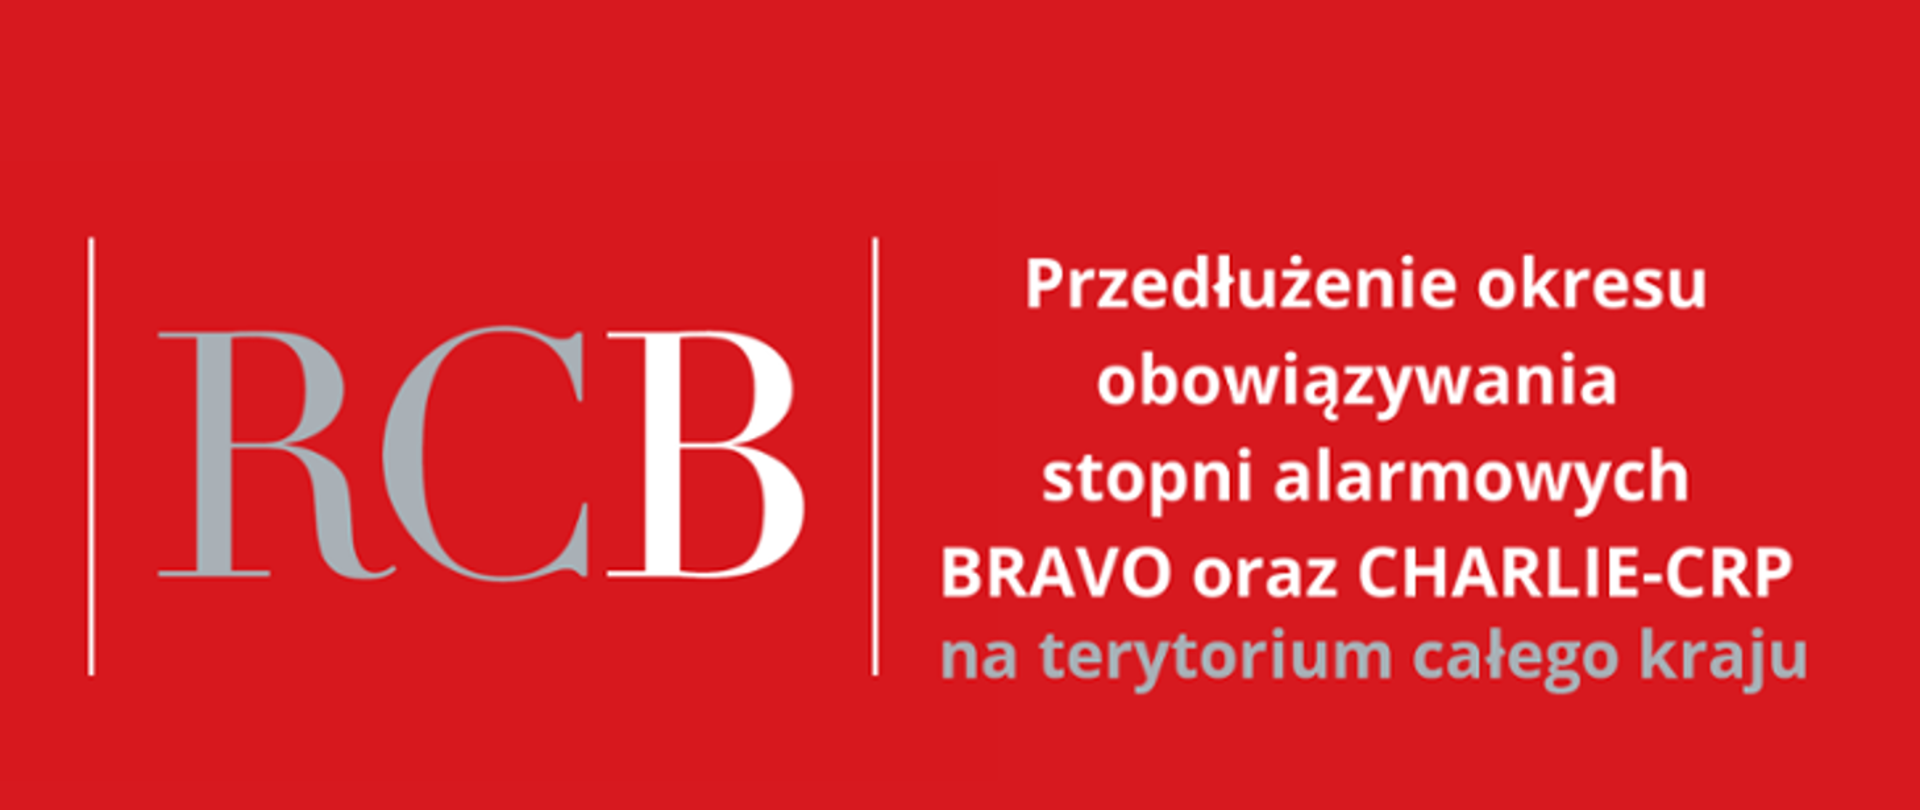 Plakat na czerwonym tle z teścia Przedłużenie stopni alarmowych BRAVO oraz CHARLIE-CRP na terytorium całego kraju, po lewej stronie duży napis RCB